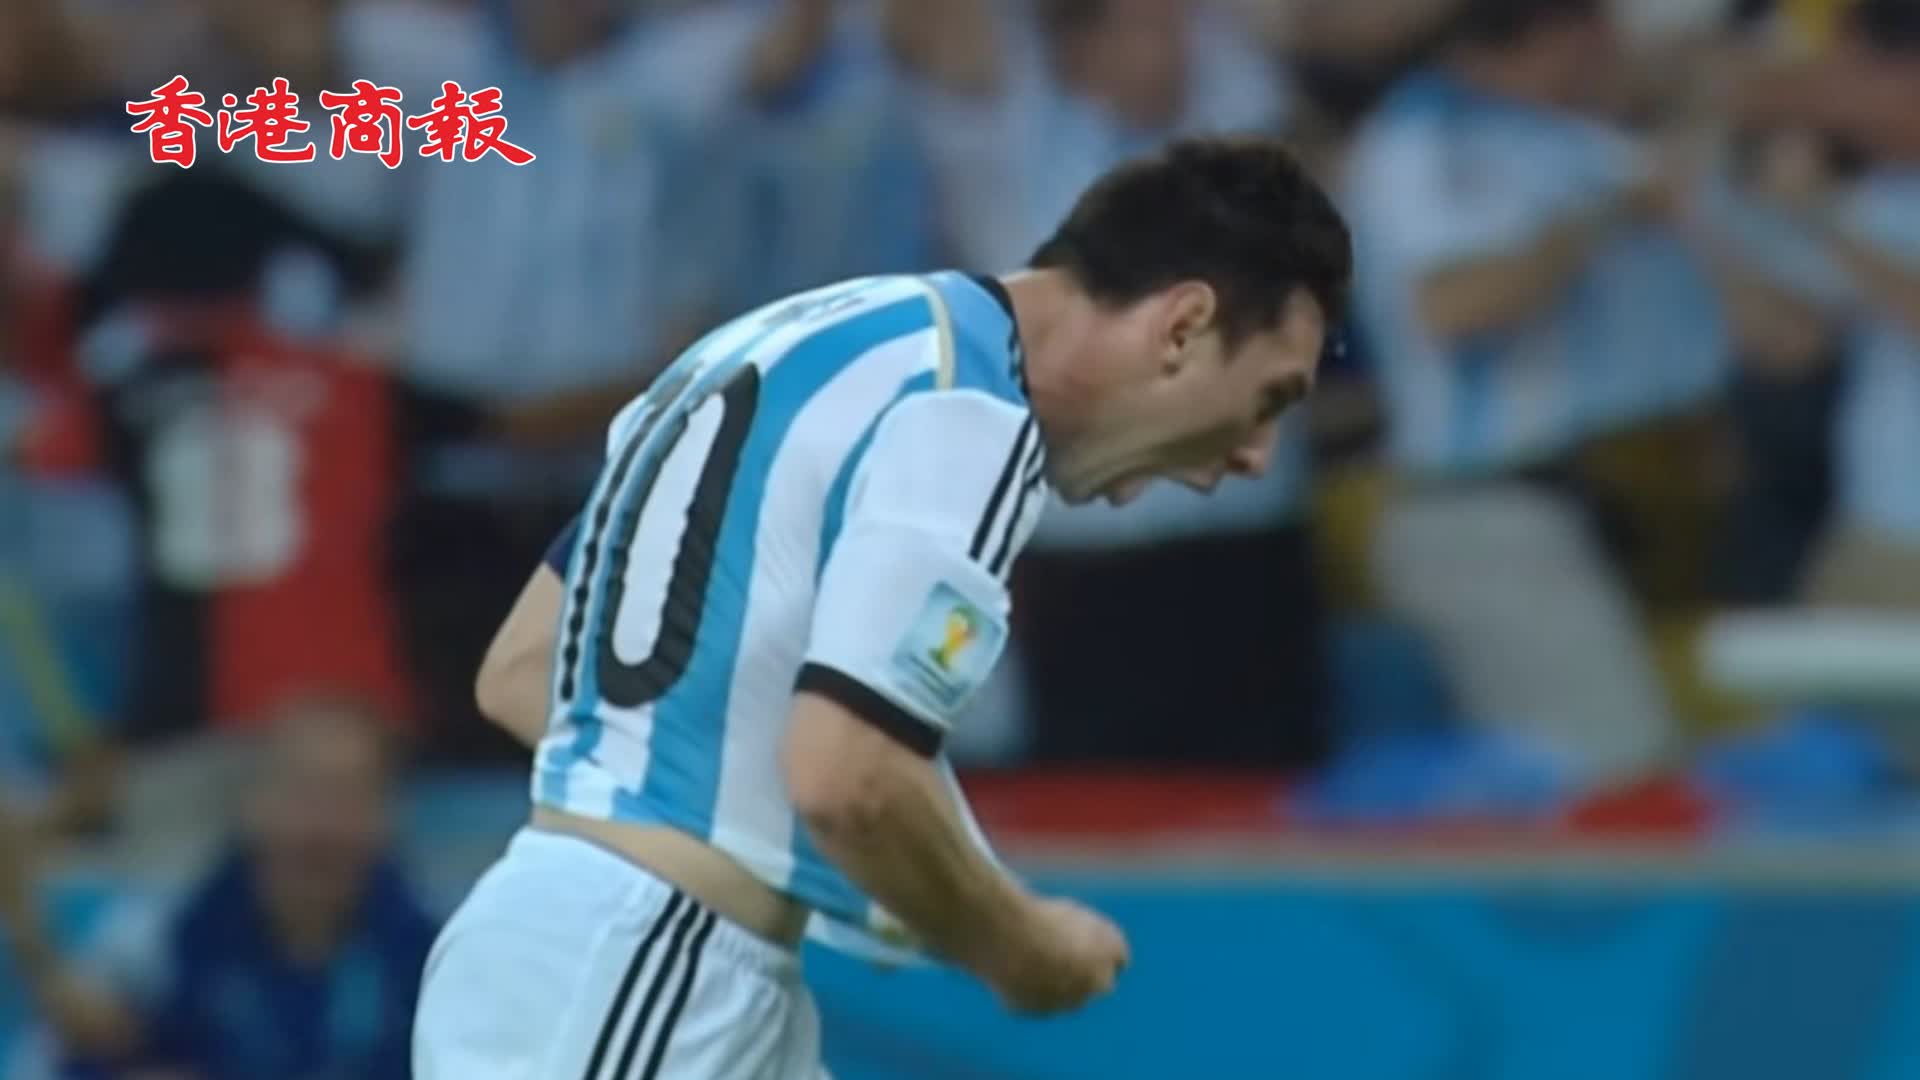 有片 | 阿根廷2-0戰勝墨西哥 更衣室狂歡 美斯赤膊高歌